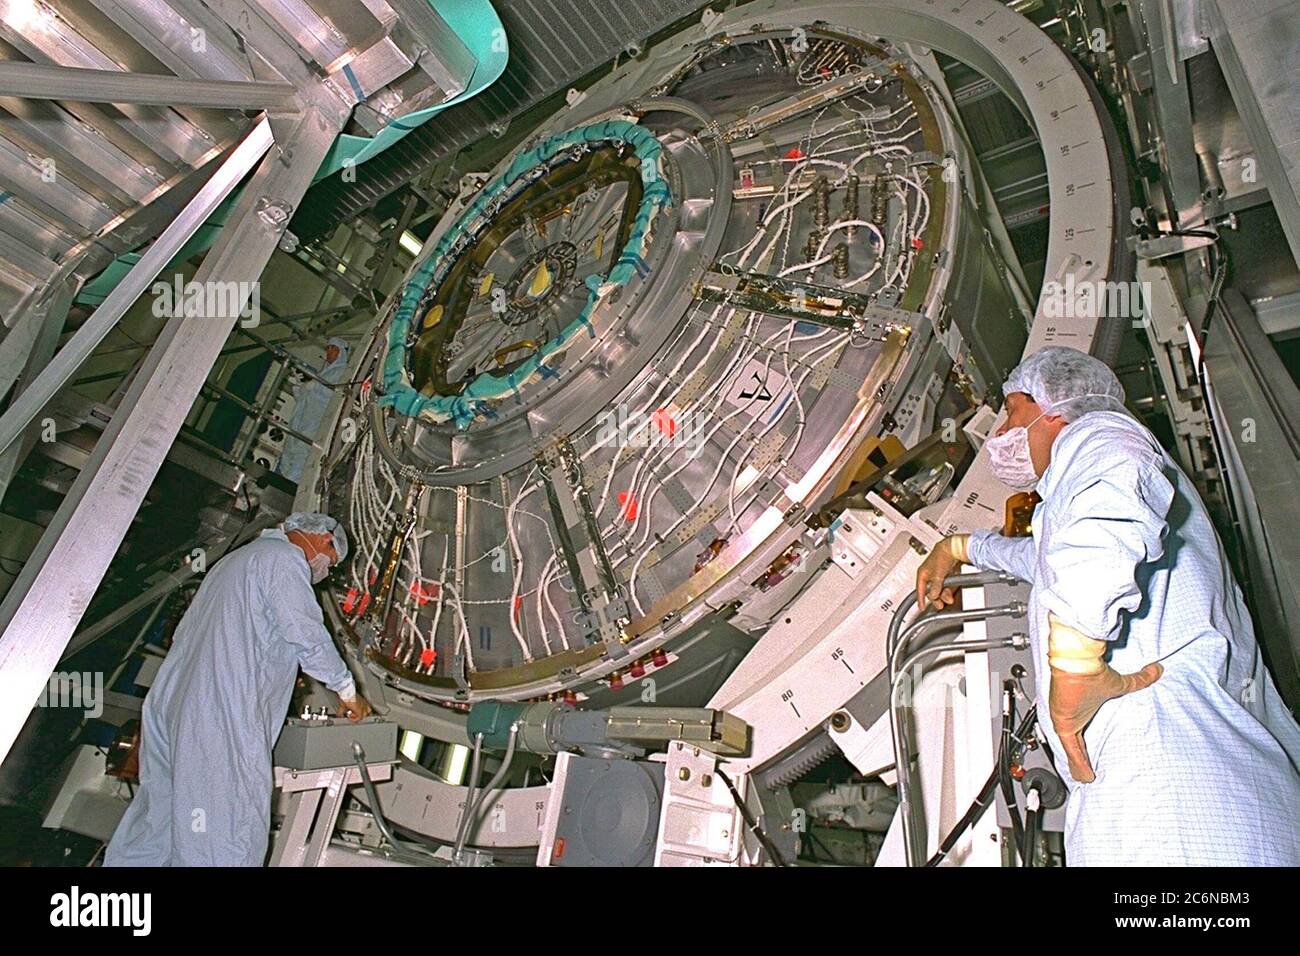 Gli operatori ruotano il nodo 1, parte del carico utile primario del primo lancio dello Space Shuttle di un elemento della Stazione spaziale Internazionale (ISS), durante le attività di elaborazione nell'impianto di elaborazione della Stazione spaziale. Insieme a due adattatori di accoppiamento pressurizzati, il nodo 1 è previsto per il lancio a bordo dello Space Shuttle Endeavour sulla missione STS-88 nel luglio 1998. Il modulo lungo 22 piedi ha un diametro di 18 piedi. Il nodo 1 servirà come passaggio di collegamento alle aree di vita e di lavoro dell'ISS Foto Stock